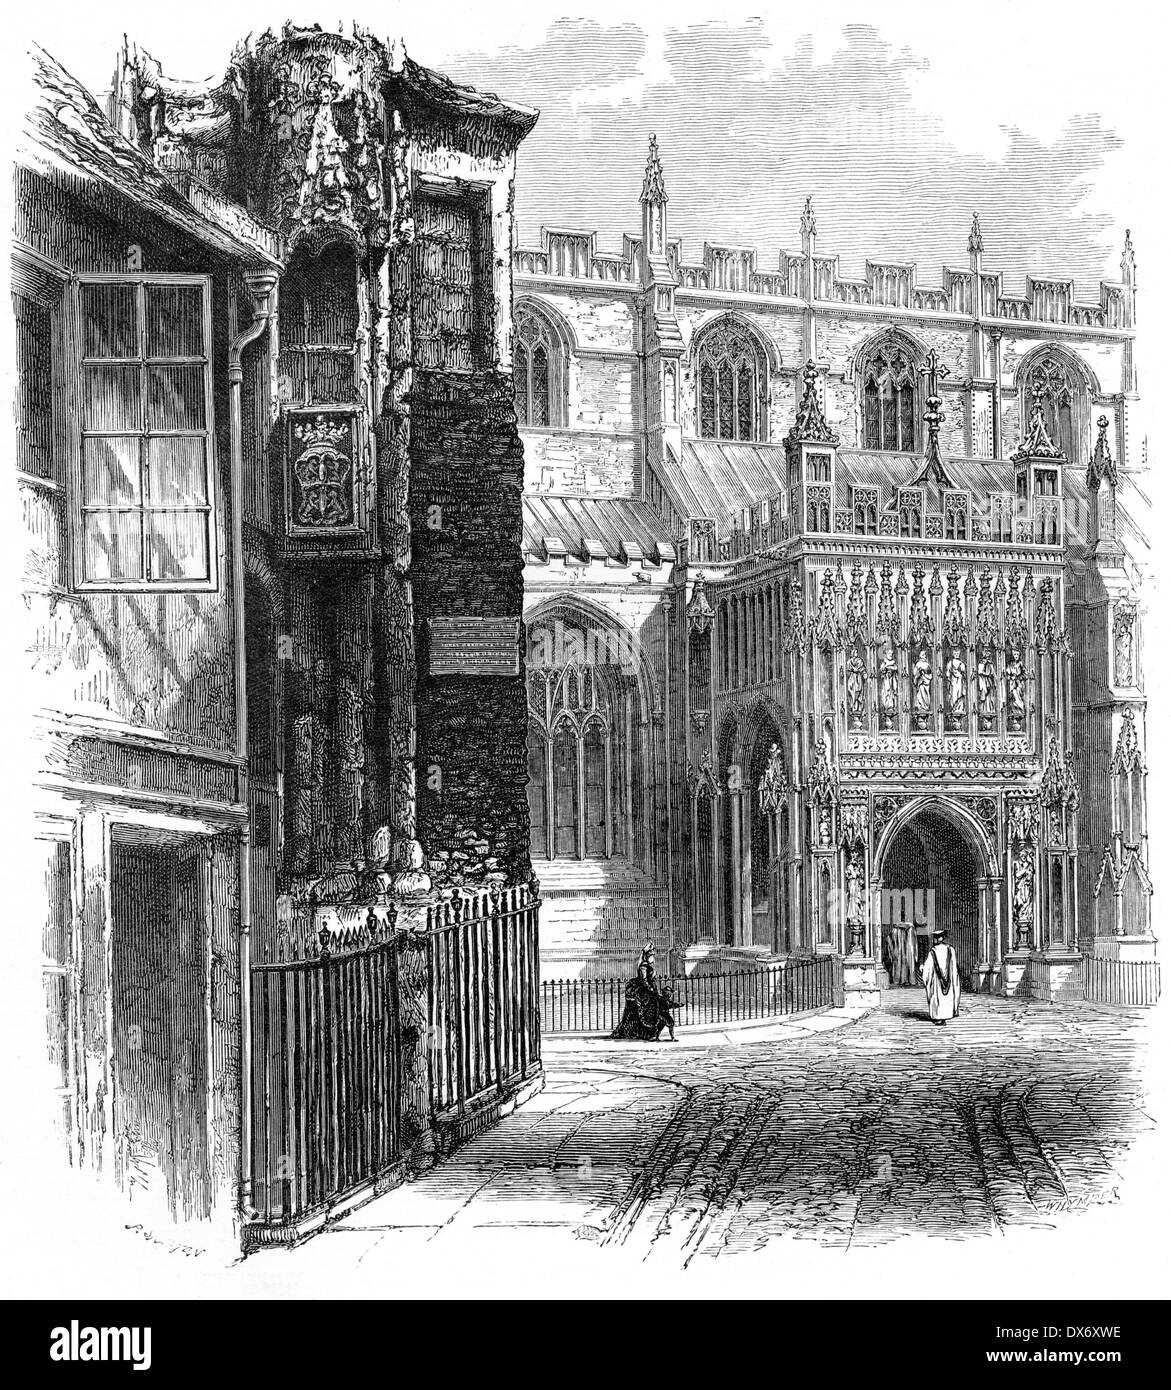 Eine Gravur mit dem Titel "The South Porch, Gloucester Cathedral" Scannen mit hoher Auflösung aus einem Buch, veröffentlicht im Jahre 1880. Stockfoto